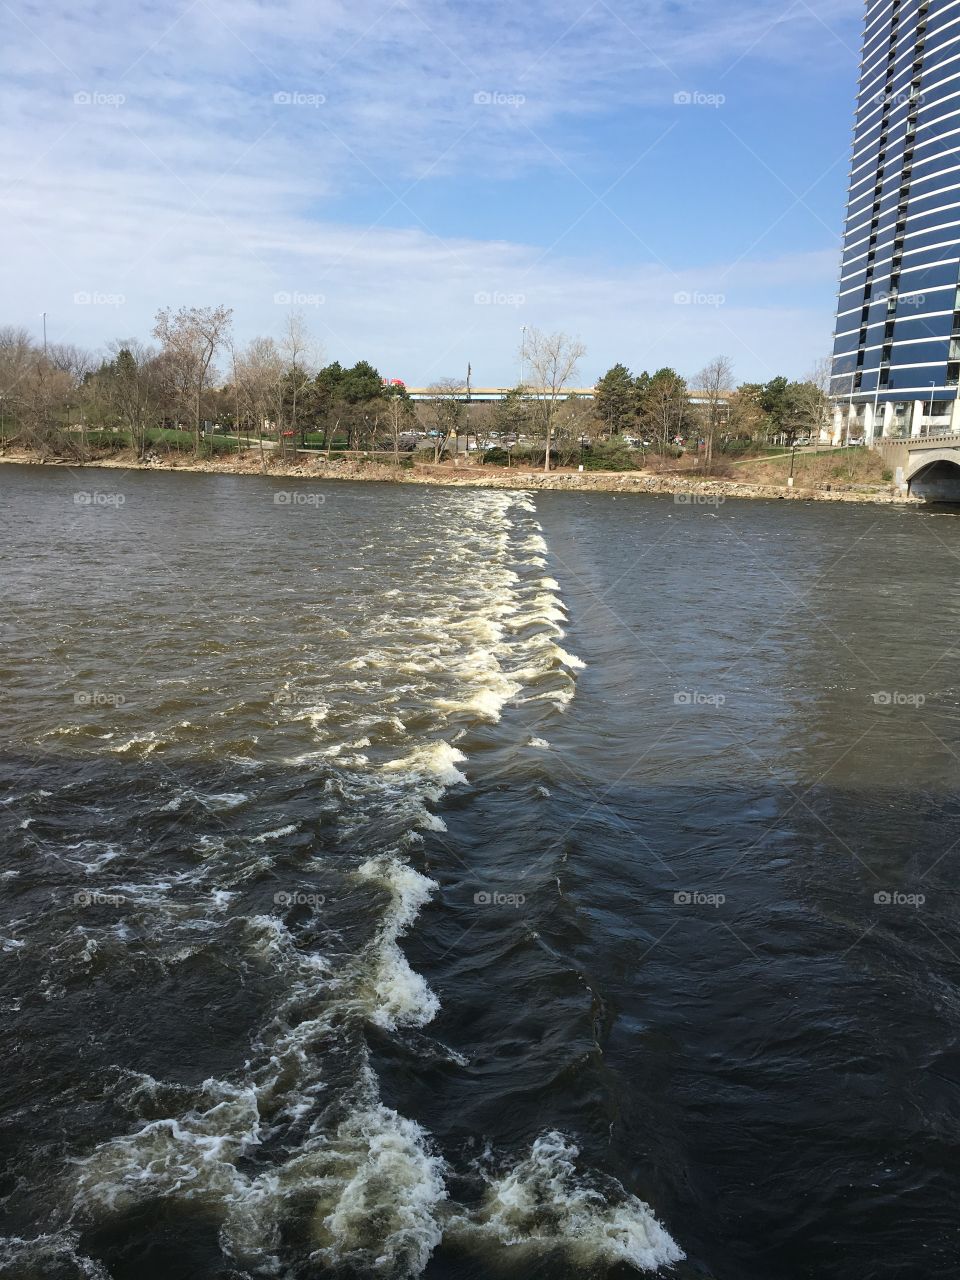 White caps on the Grand river in Grand Rapids Michigan 